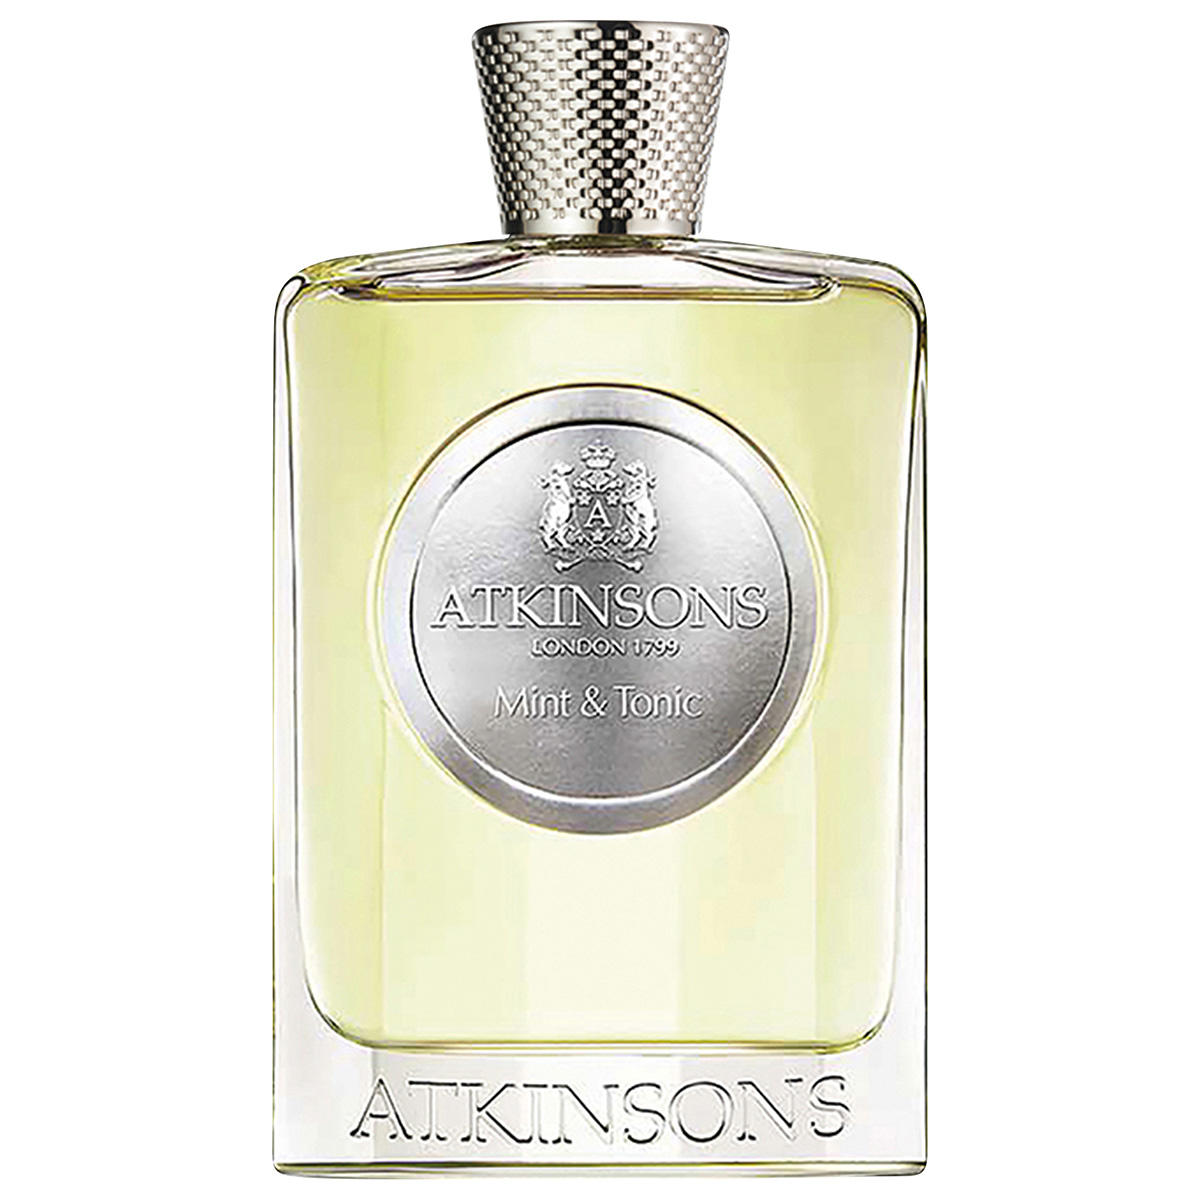 ATKINSONS Mint & Tonic Eau de Parfum 100 ml - 1